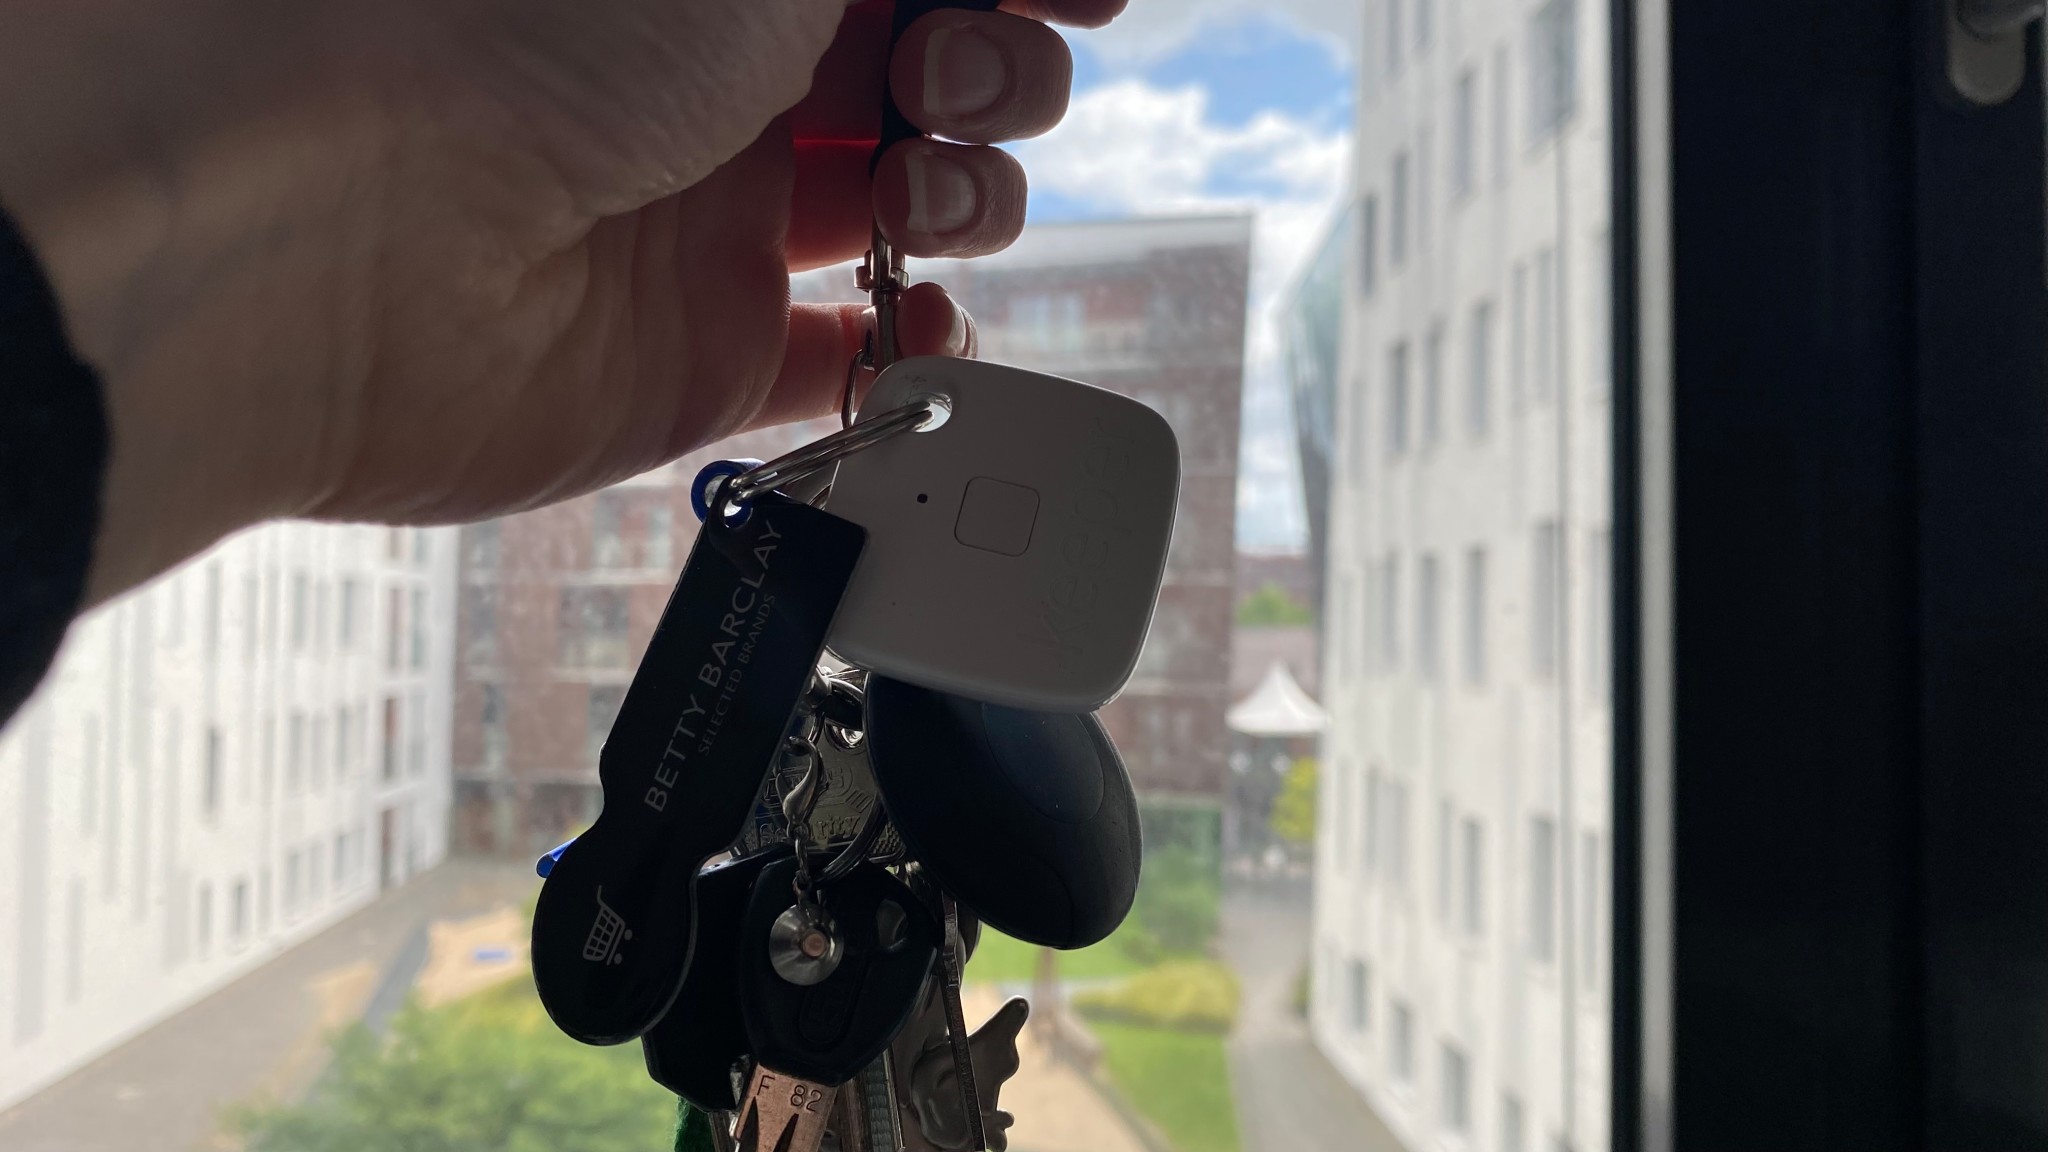 Gigaset Keeper Solo Porte-clés connecté avec Alertes sonores/lumineuses  Bluetooth 4.0 Blanc : : High-Tech